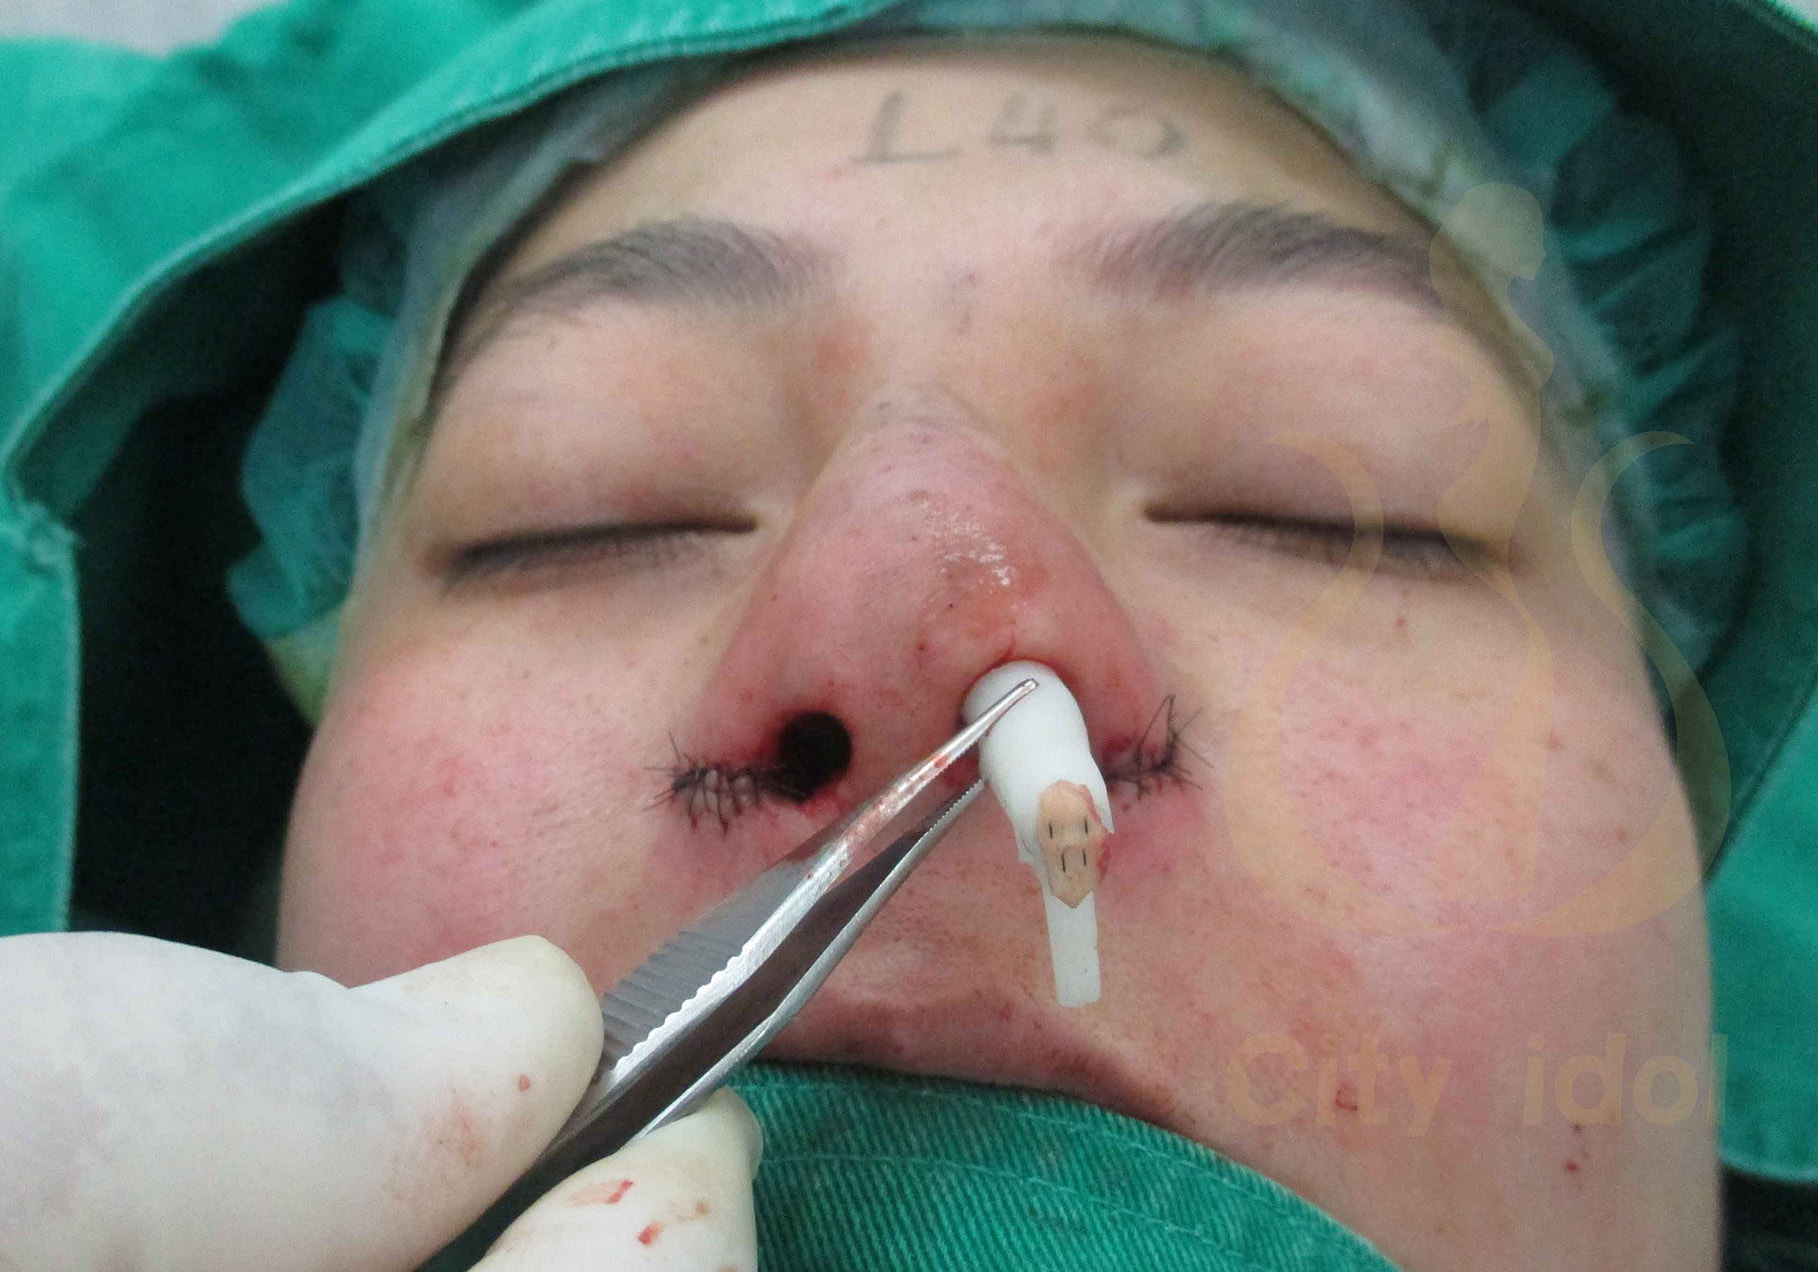 術 中 L 形 鼻 模 挖 凹 洞 修 飾 駝 峰 , 鼻 尖 縫 上 耳 軟 骨 及 置 入 鼻 模